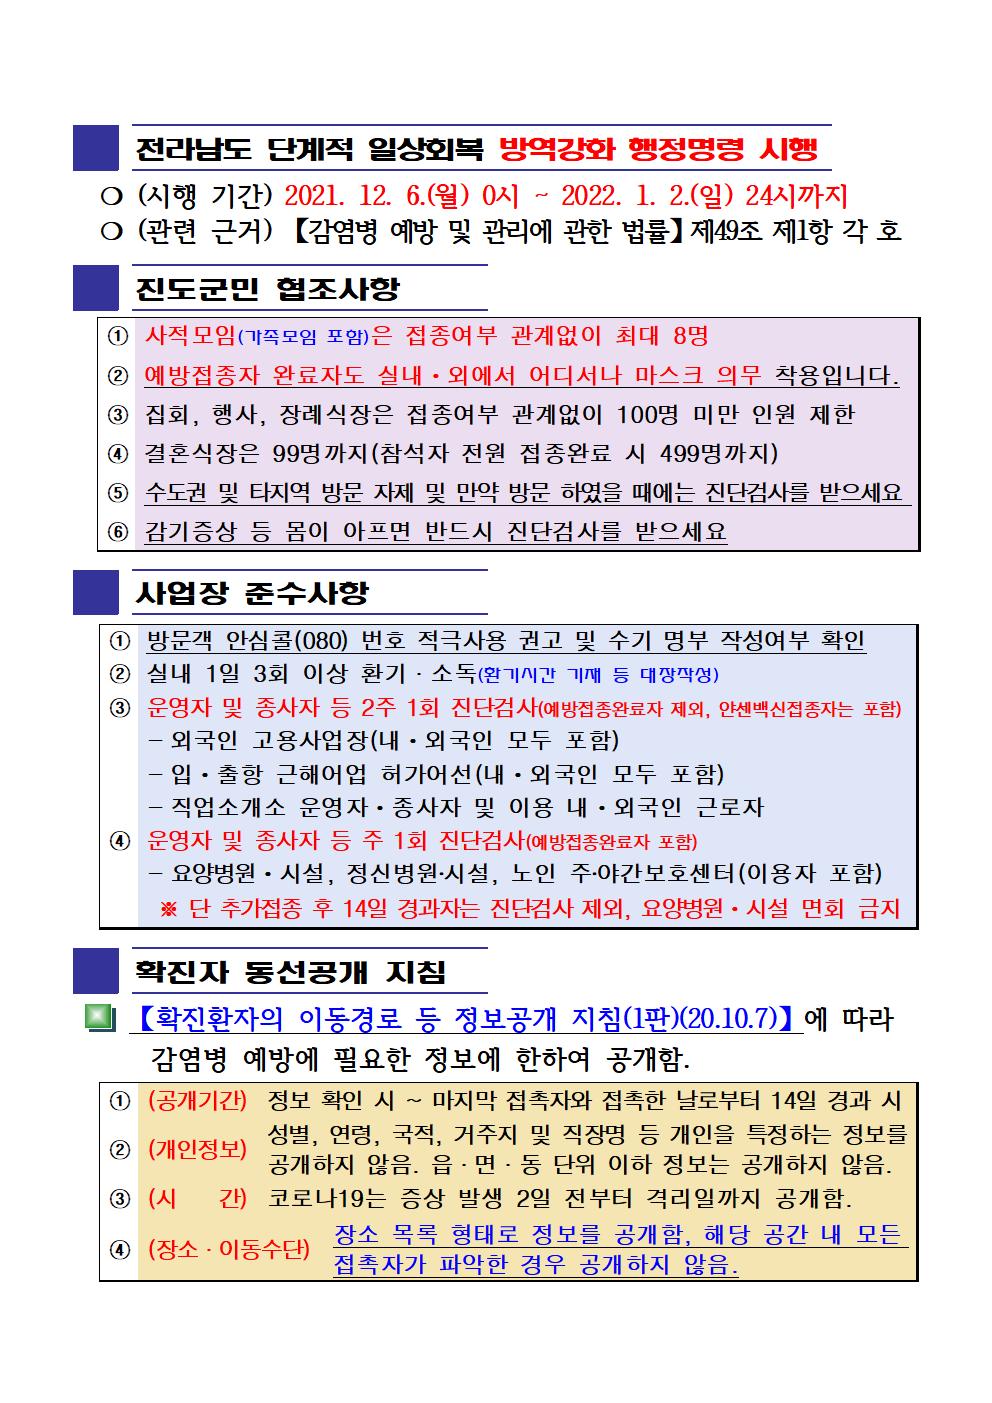 2021년 코로나 19 대응 일일상황보고(12월 14일 24시 기준) 첨부#2